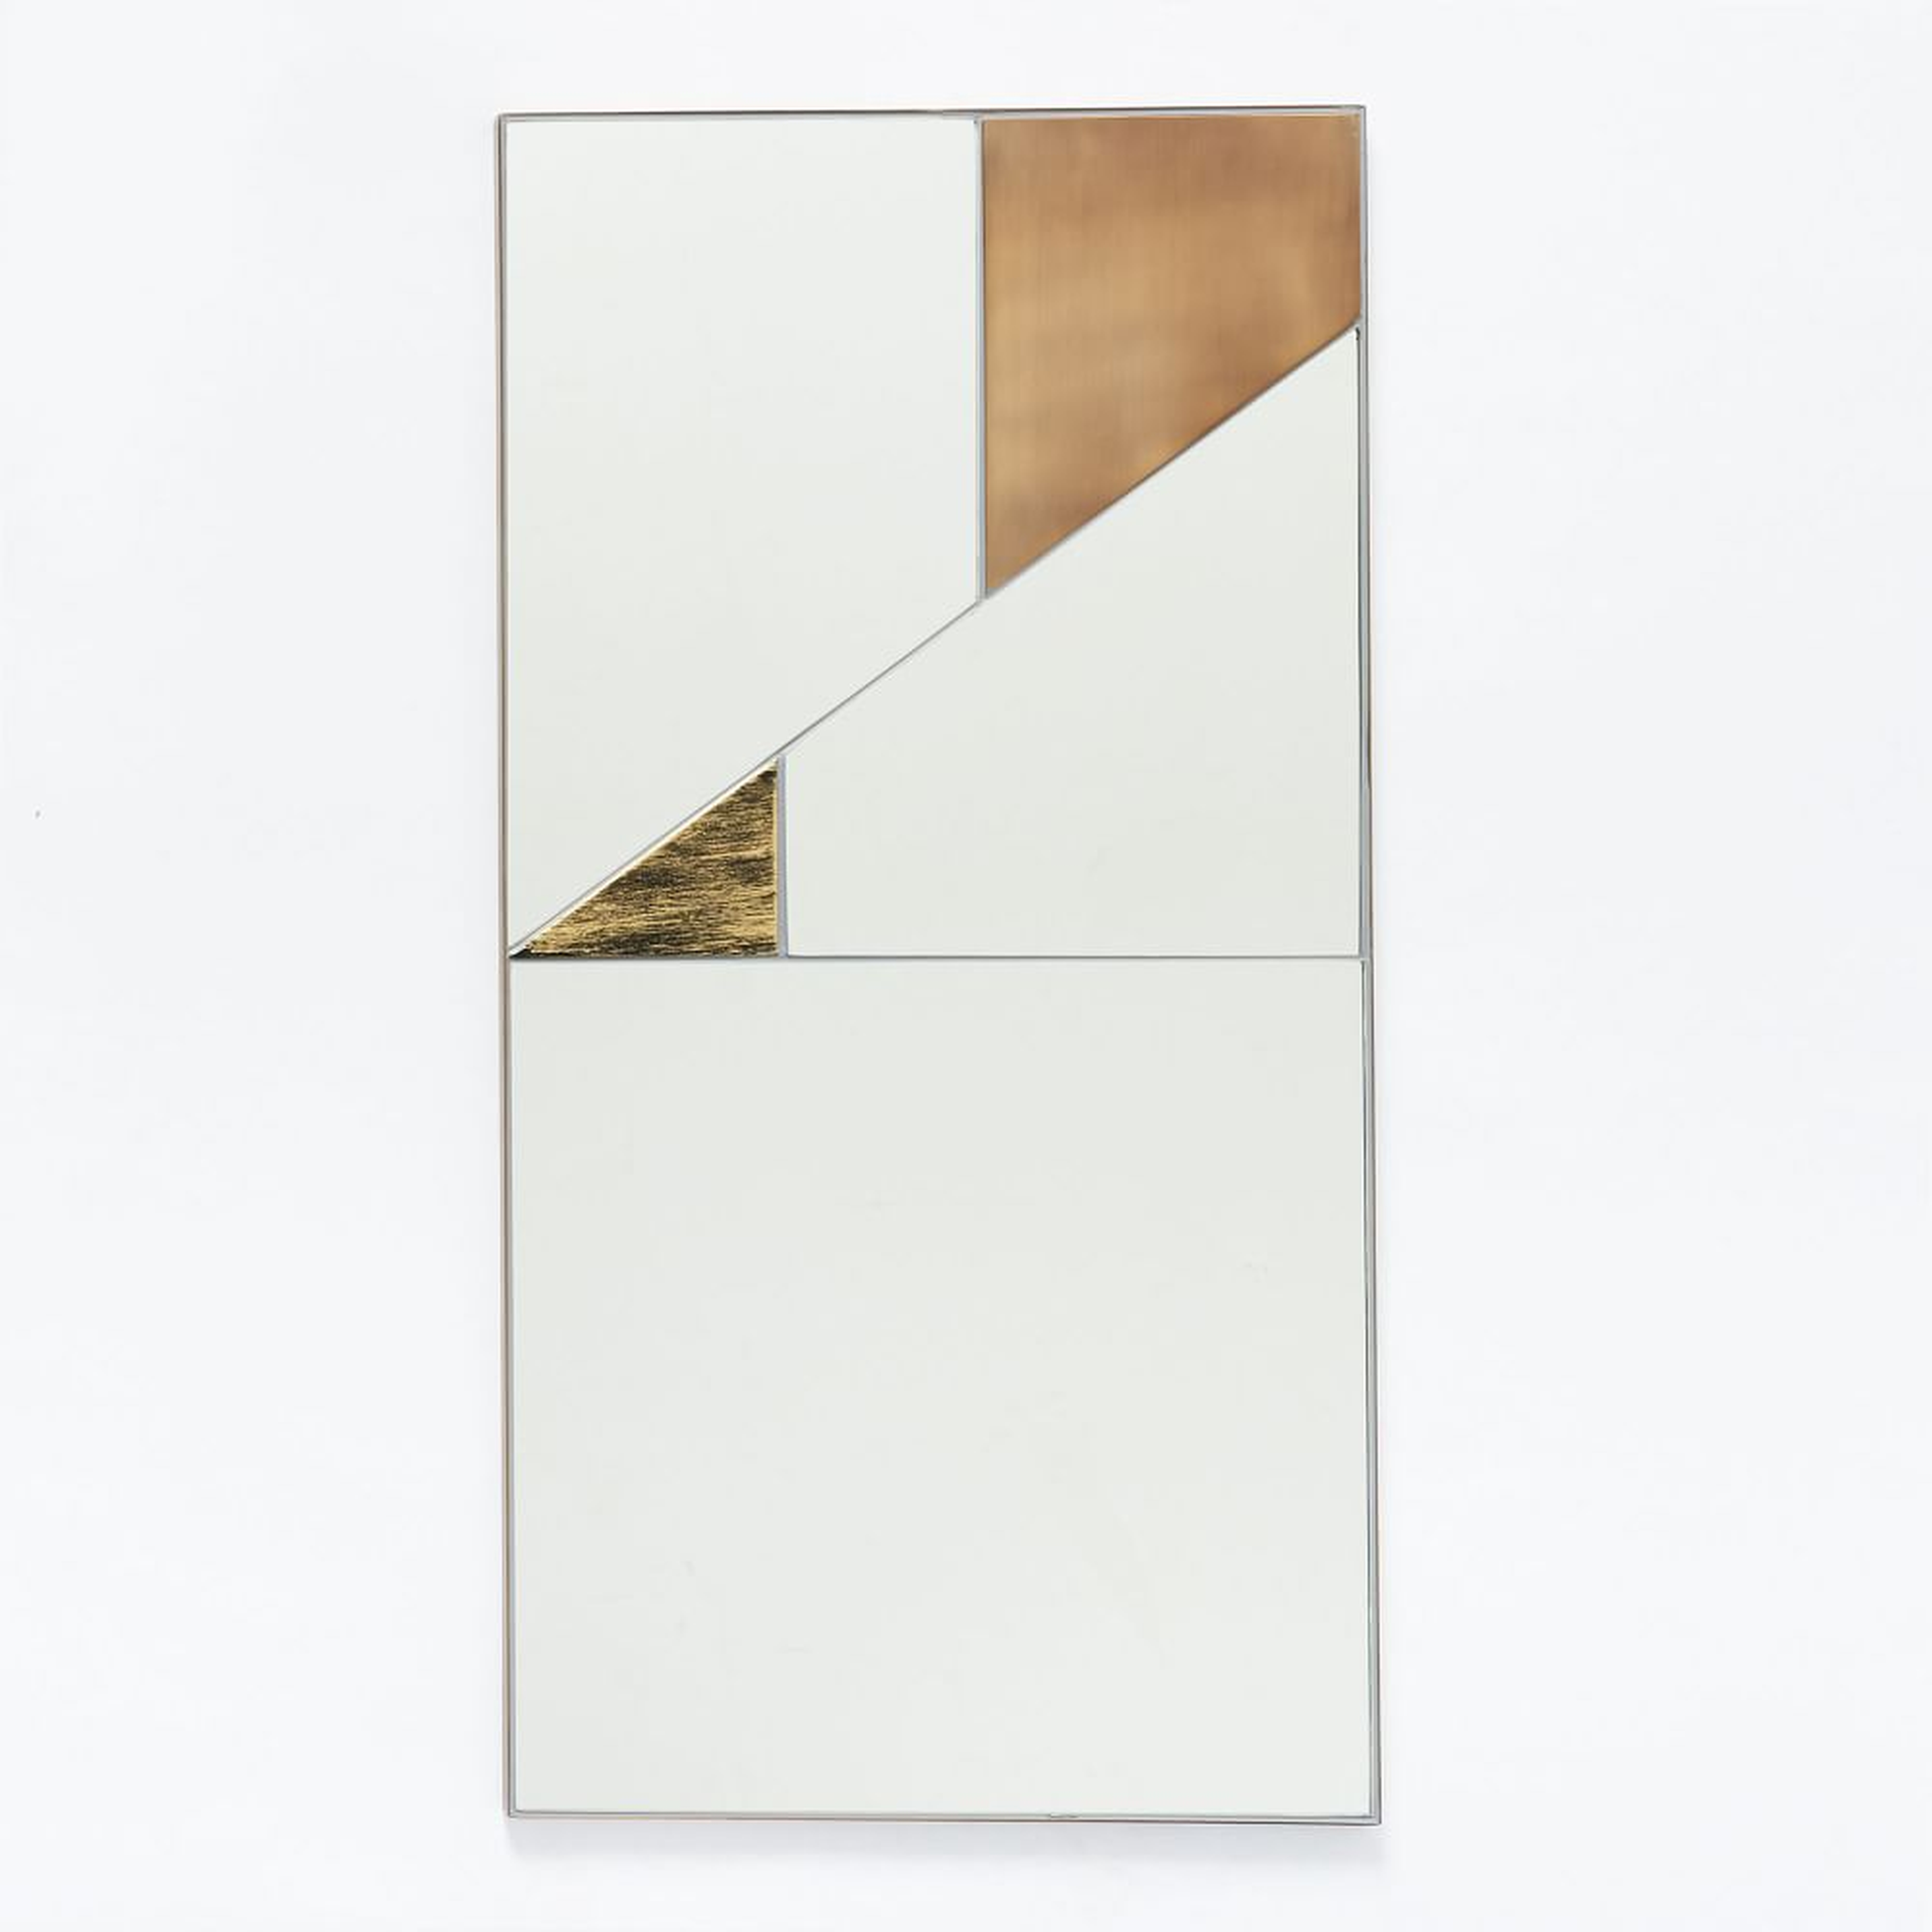 Roar + Rabbit Infinity Mirror, Panel II, 18"Wx36"H - West Elm